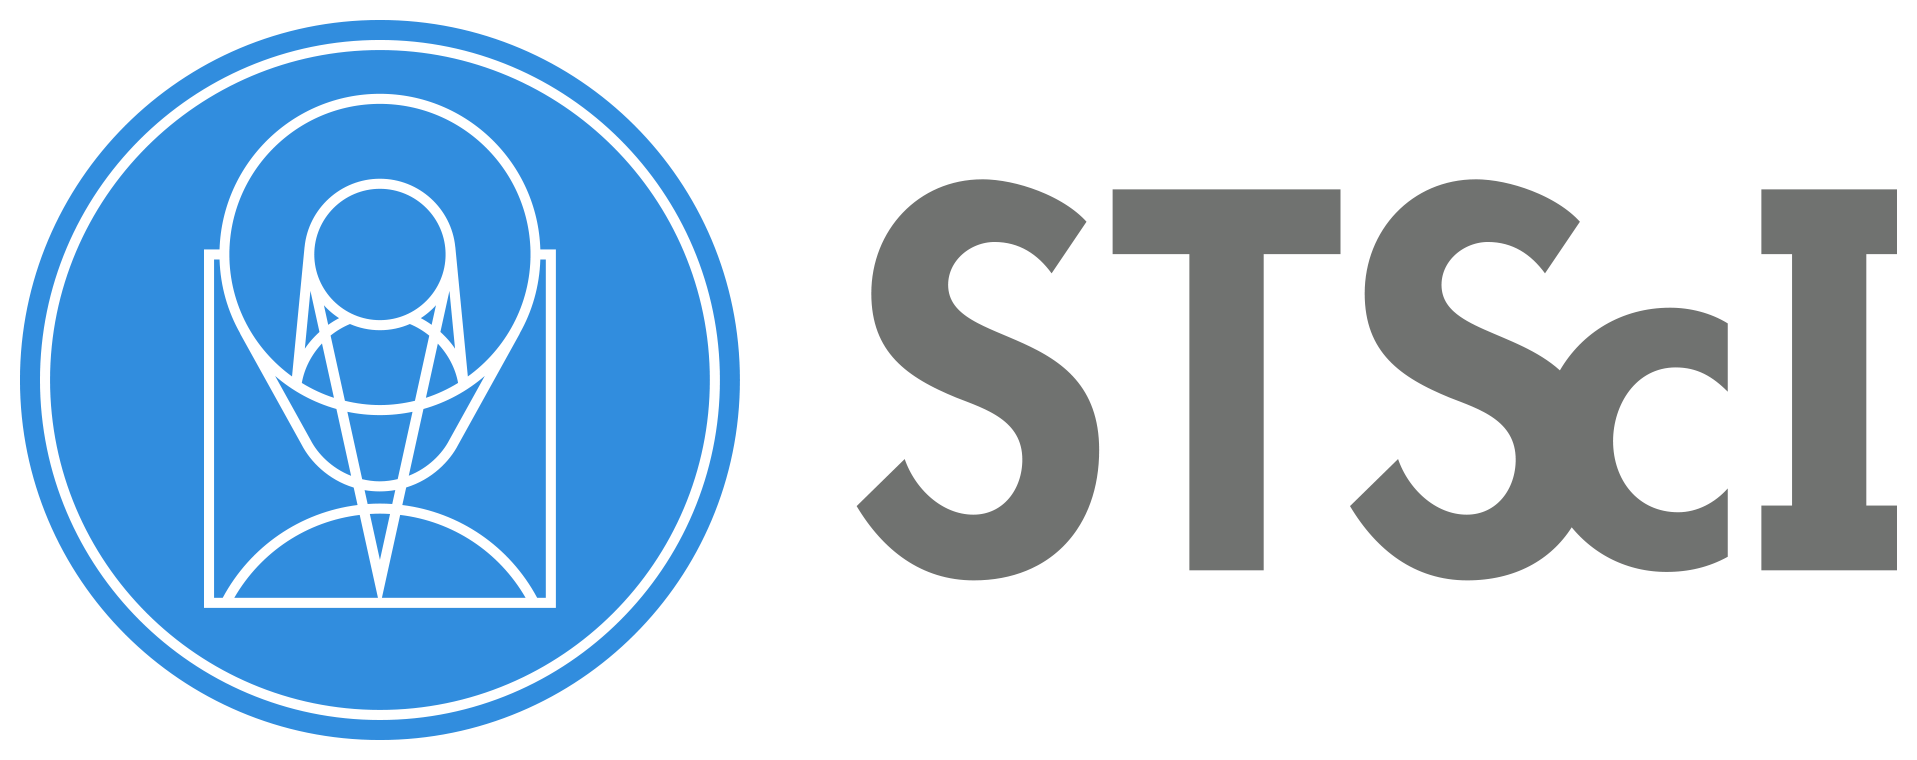 stsci_logo2.png